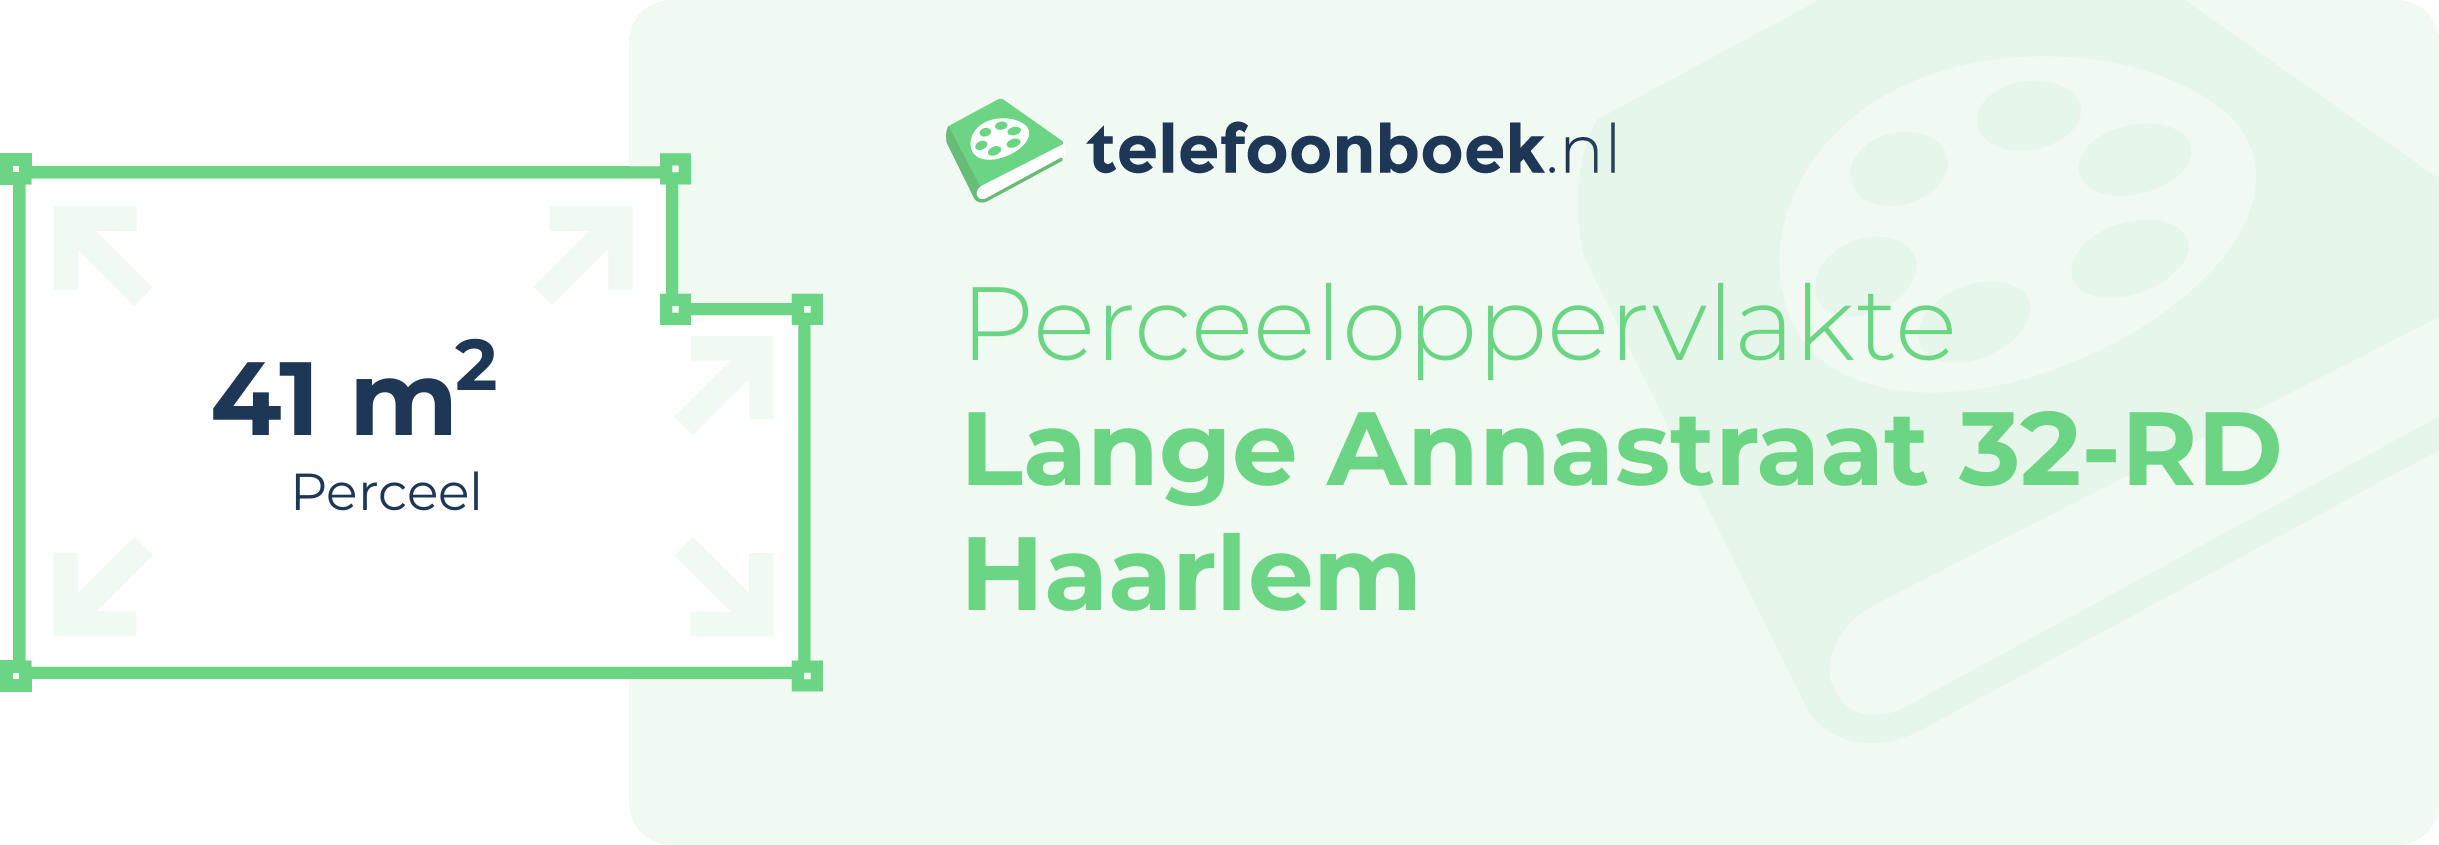 Perceeloppervlakte Lange Annastraat 32-RD Haarlem